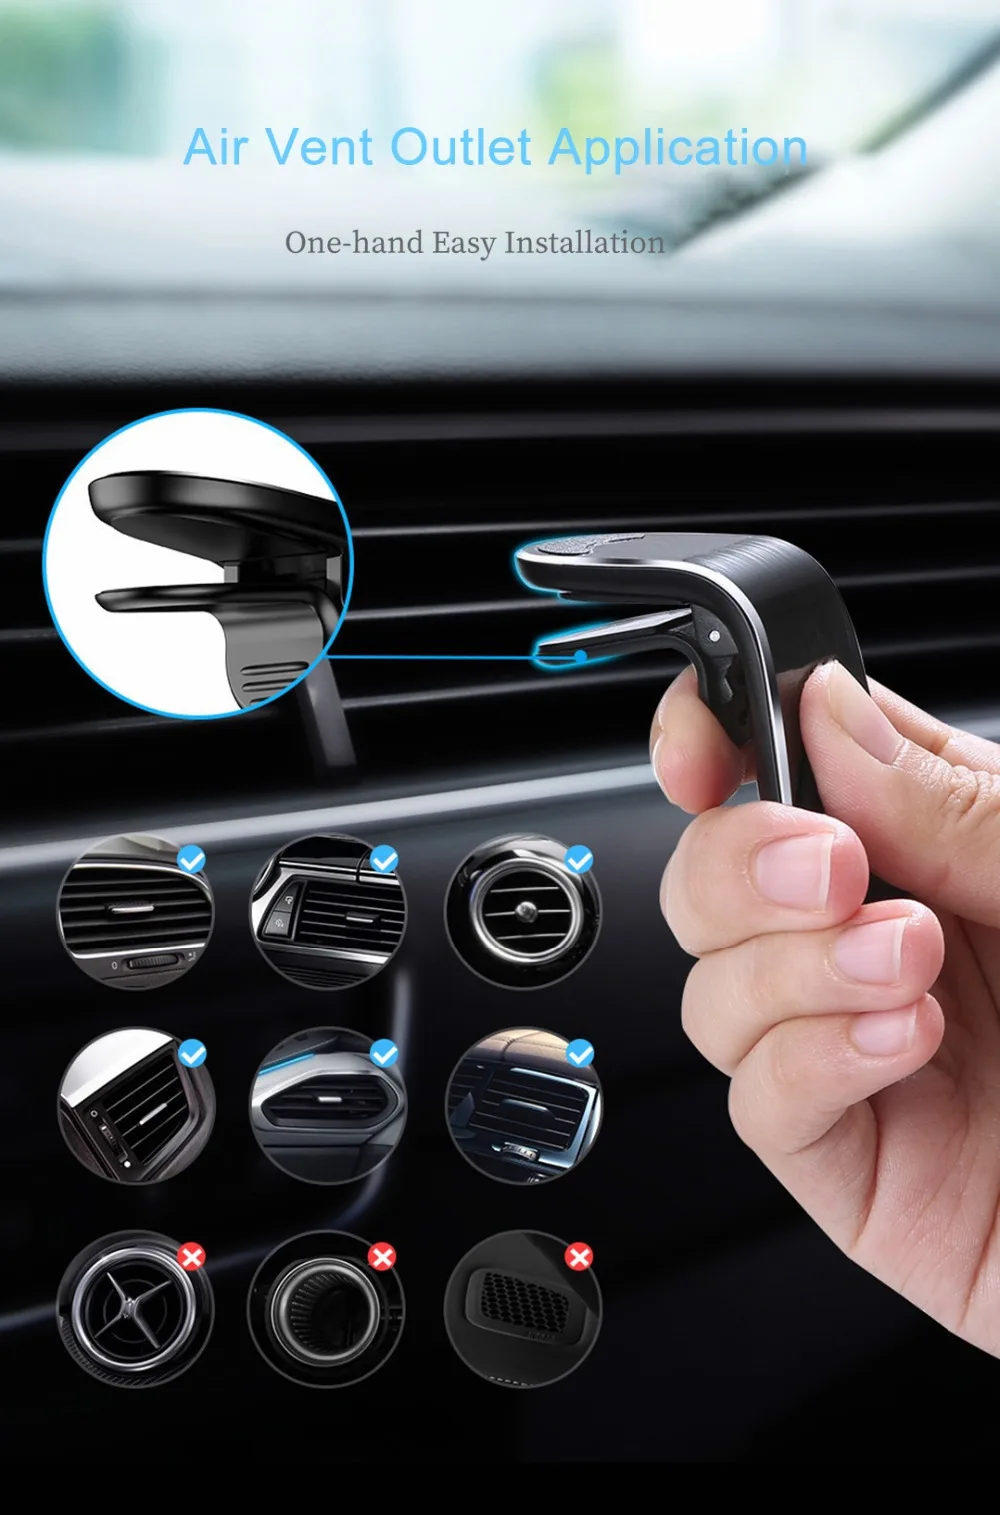 QIBOY магнитный автомобильный держатель для телефона в Автомобиле вентиляционное отверстие крепление магнит держатель для мобильного телефона держатель для навигатора для iPhone XS Max samsung S6